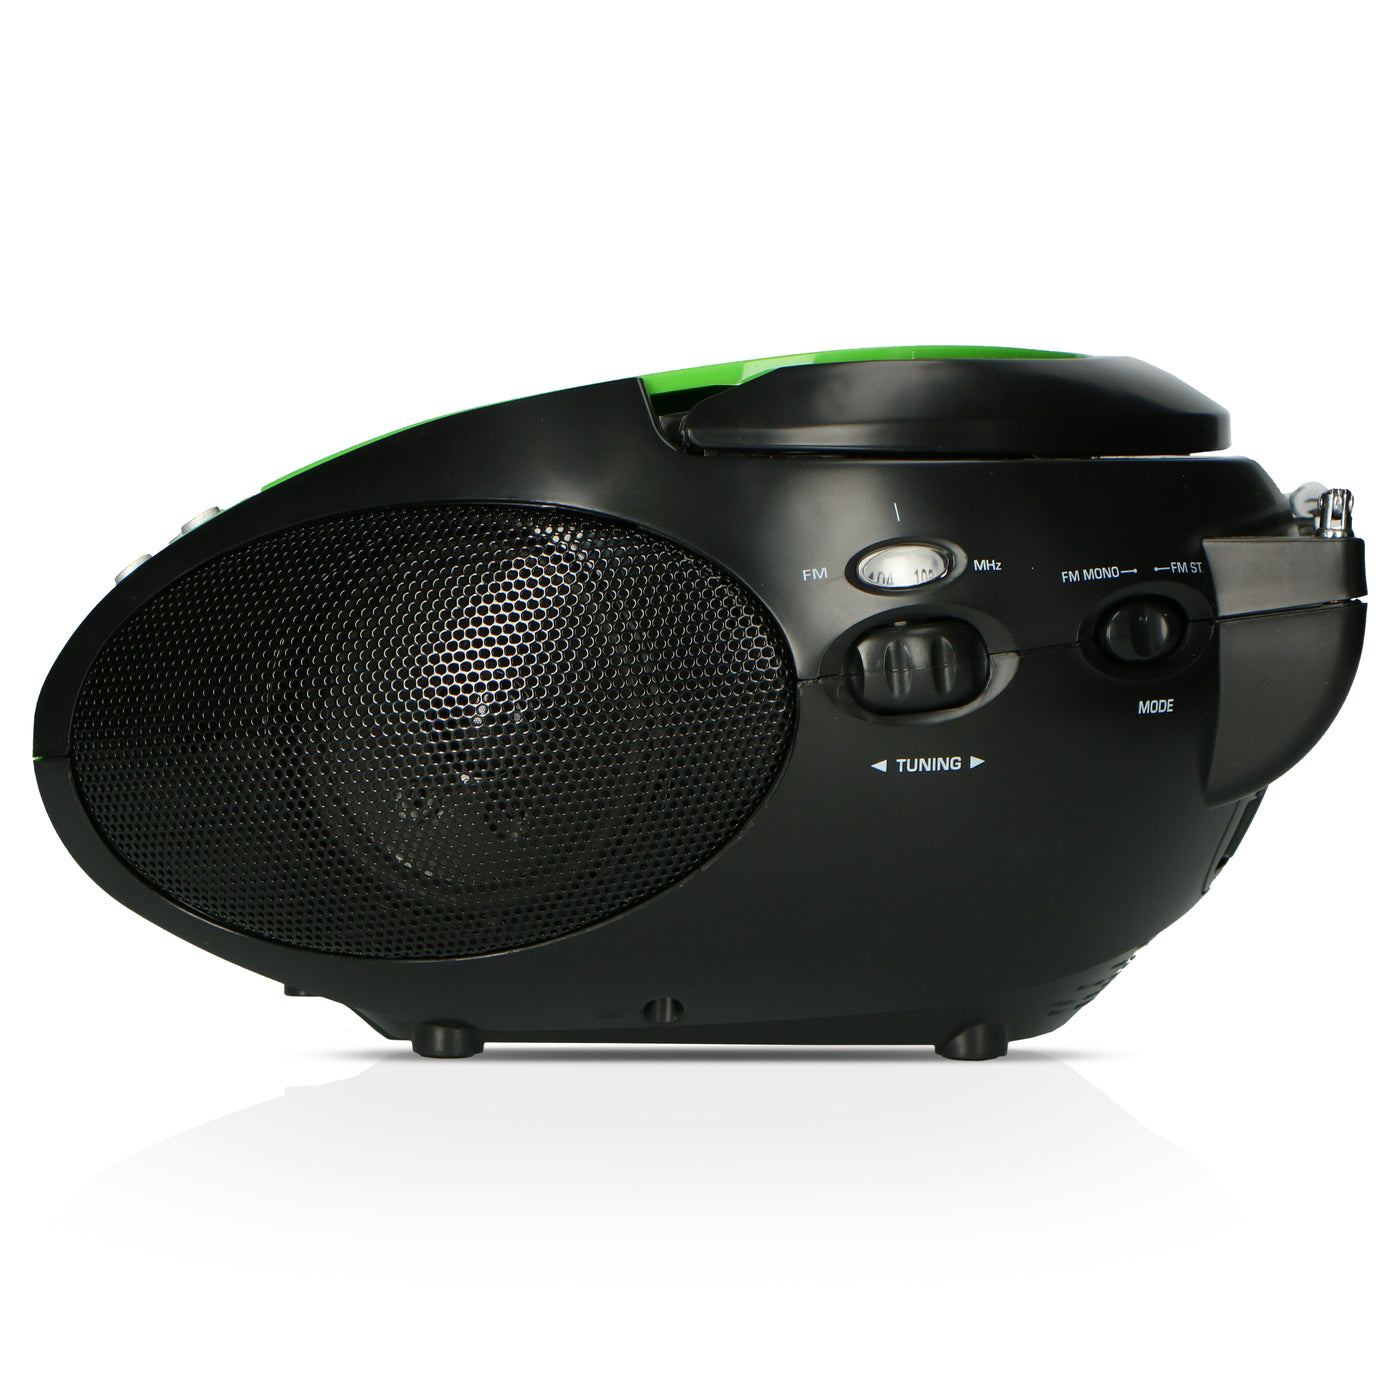 LENCO SCD-24 Green/Black - Draagbare stereo FM radio met CD-speler - Groen/zwart